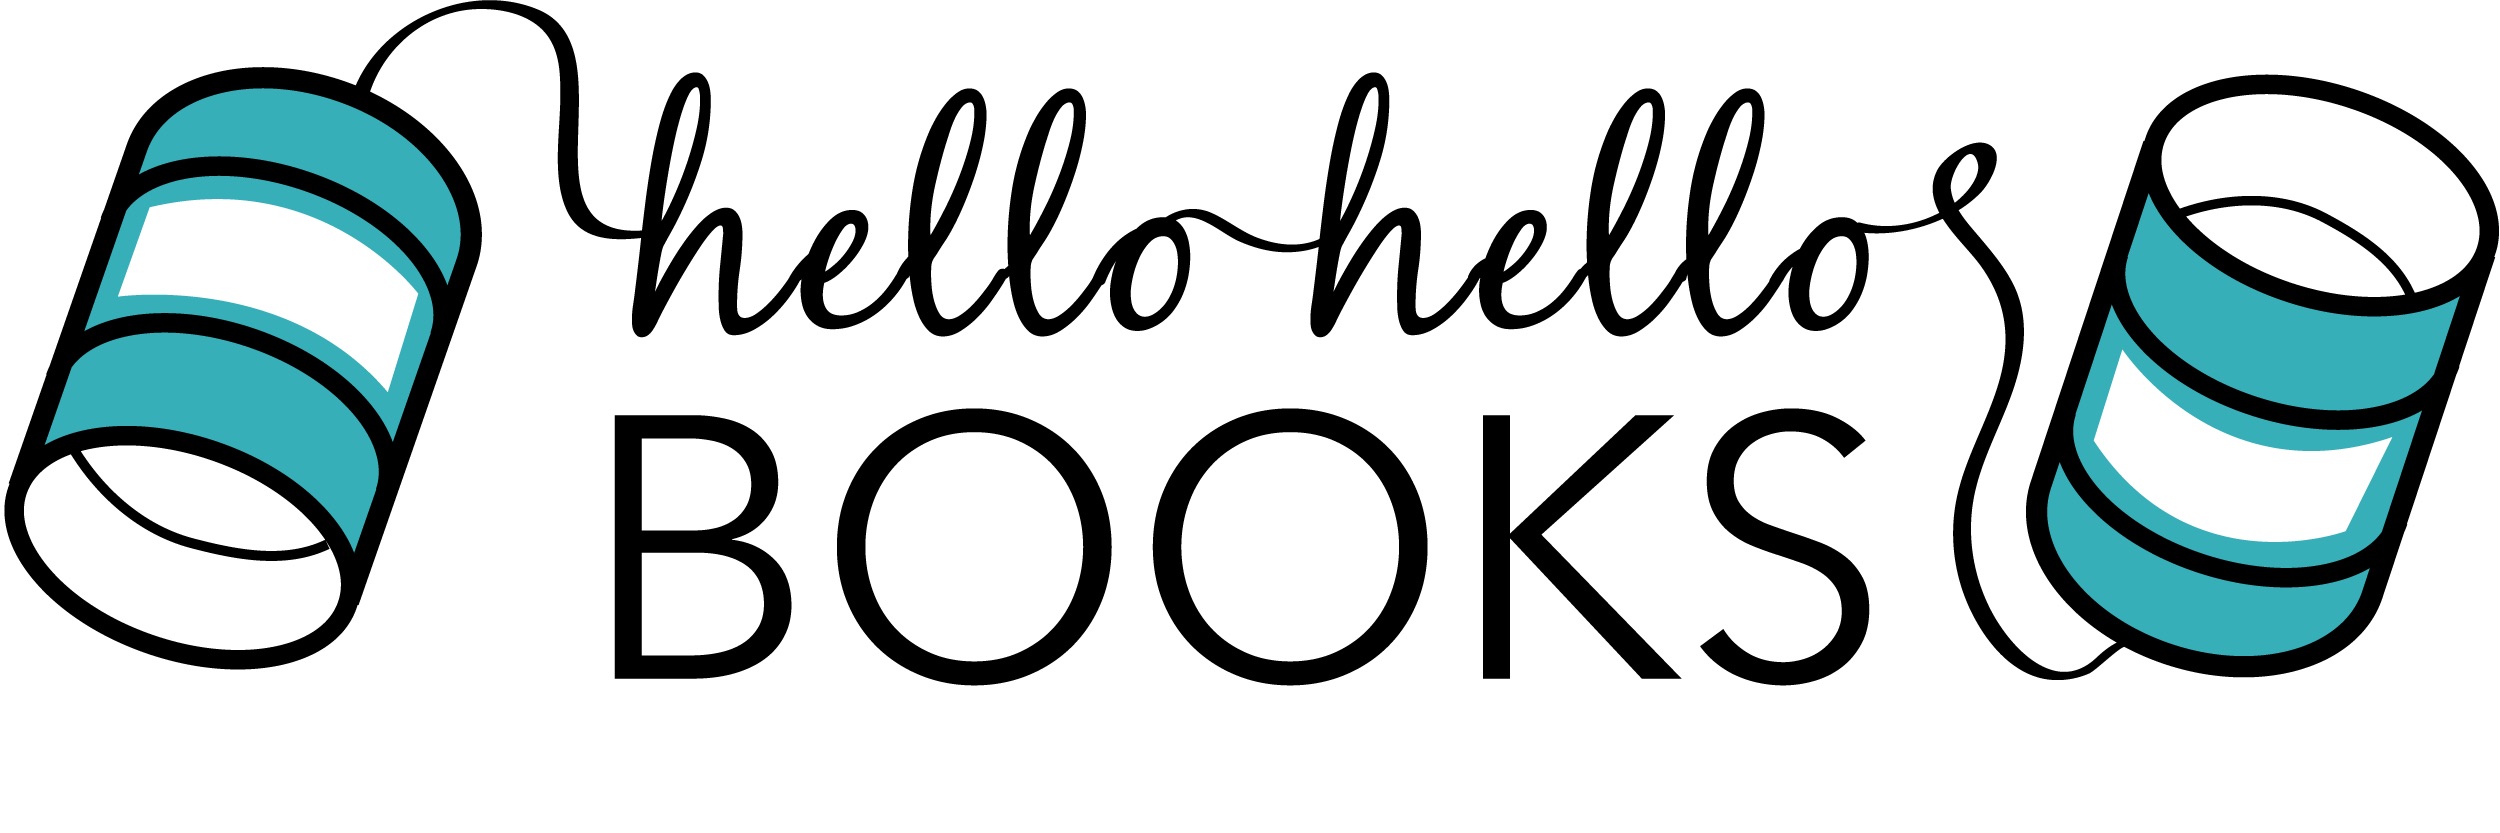 Hello Hello Books